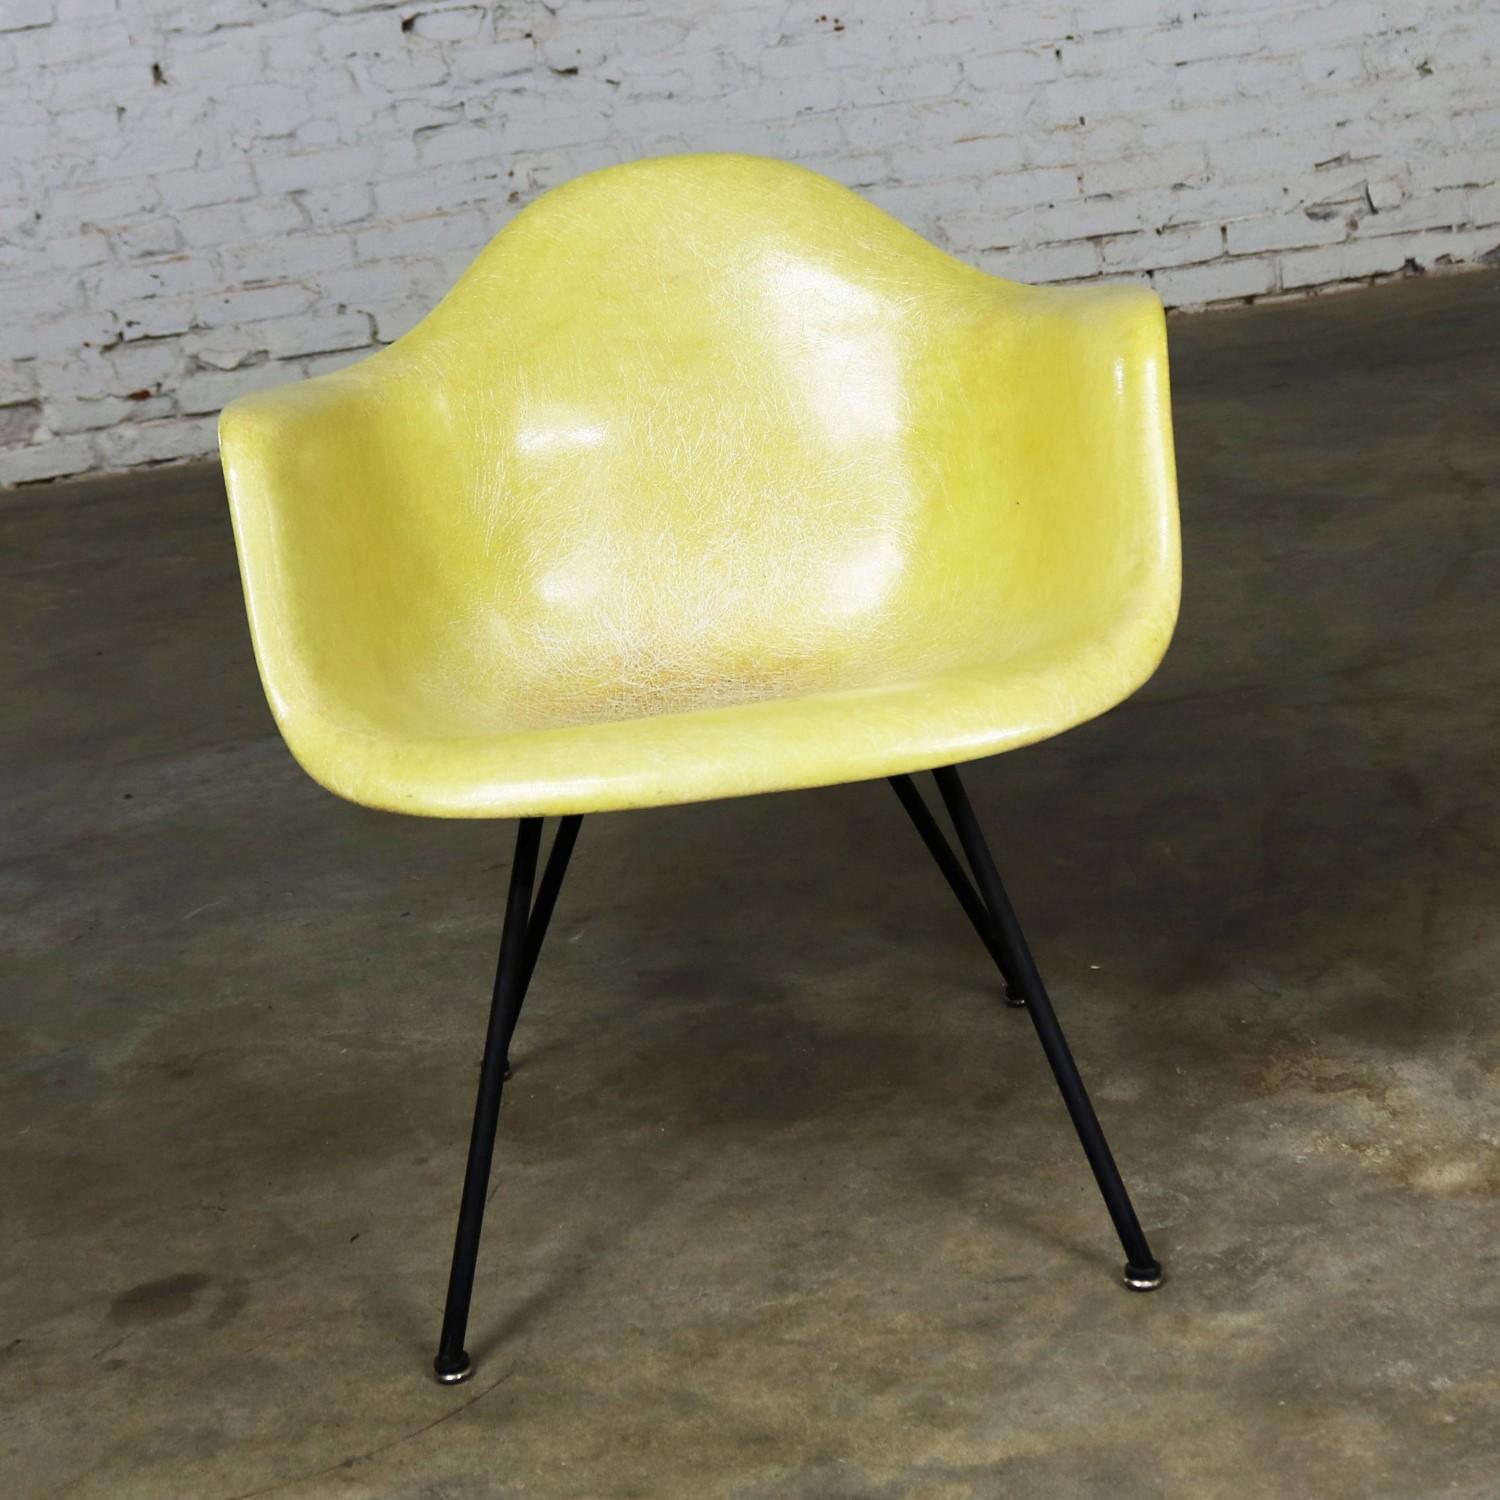 Wunderschönes Exemplar des LAX-Stuhls von Charles und Ray Eames aus geformtem Fiberglas für Herman Miller in einer der Originalfarben, Zitronengelb. Dies ist ein früher Stuhl von Zenith mit der Seilkante, dem X-Fuß und dem schachbrettartigen